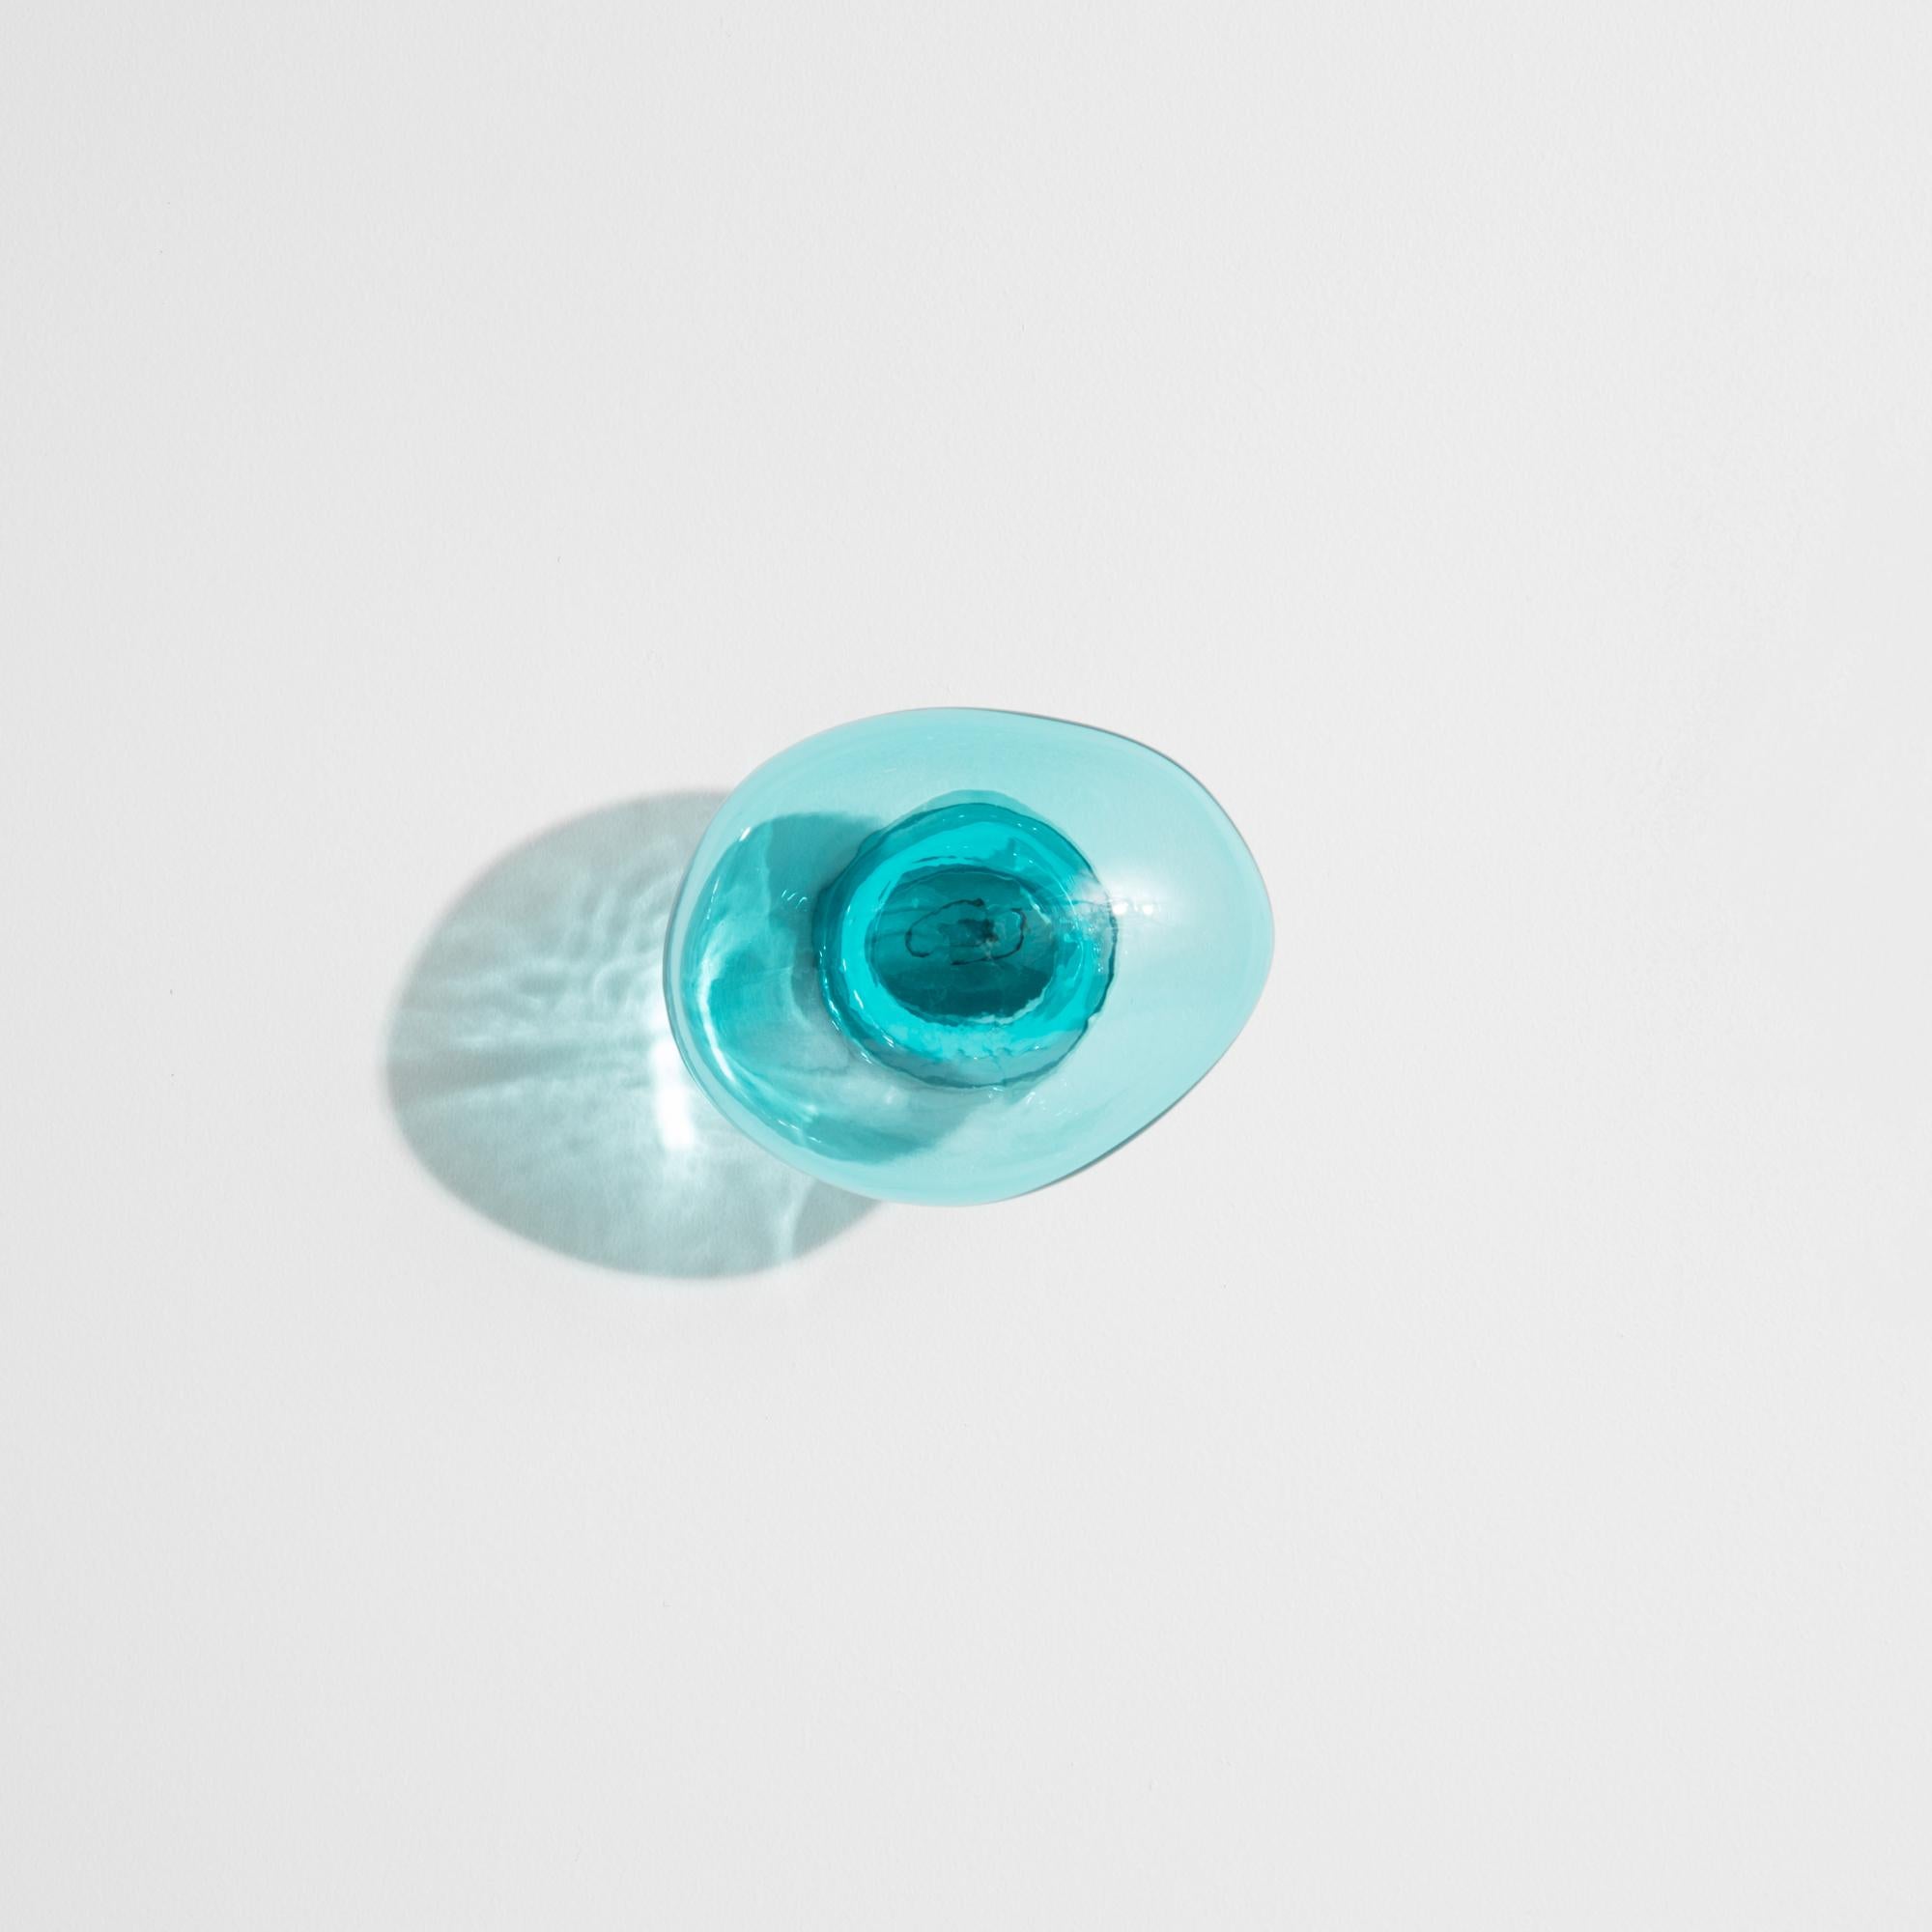 Handgeblasen in einer Form, der Blasenmantelkoch  gibt es in zwei Größen und sie bilden sich wie Seifenblasen in unvorhersehbaren Formen. Das Ergebnis ist eine Verjüngung der Wohnung durch farbenfrohe und doch transparente Akzente. Die Designer